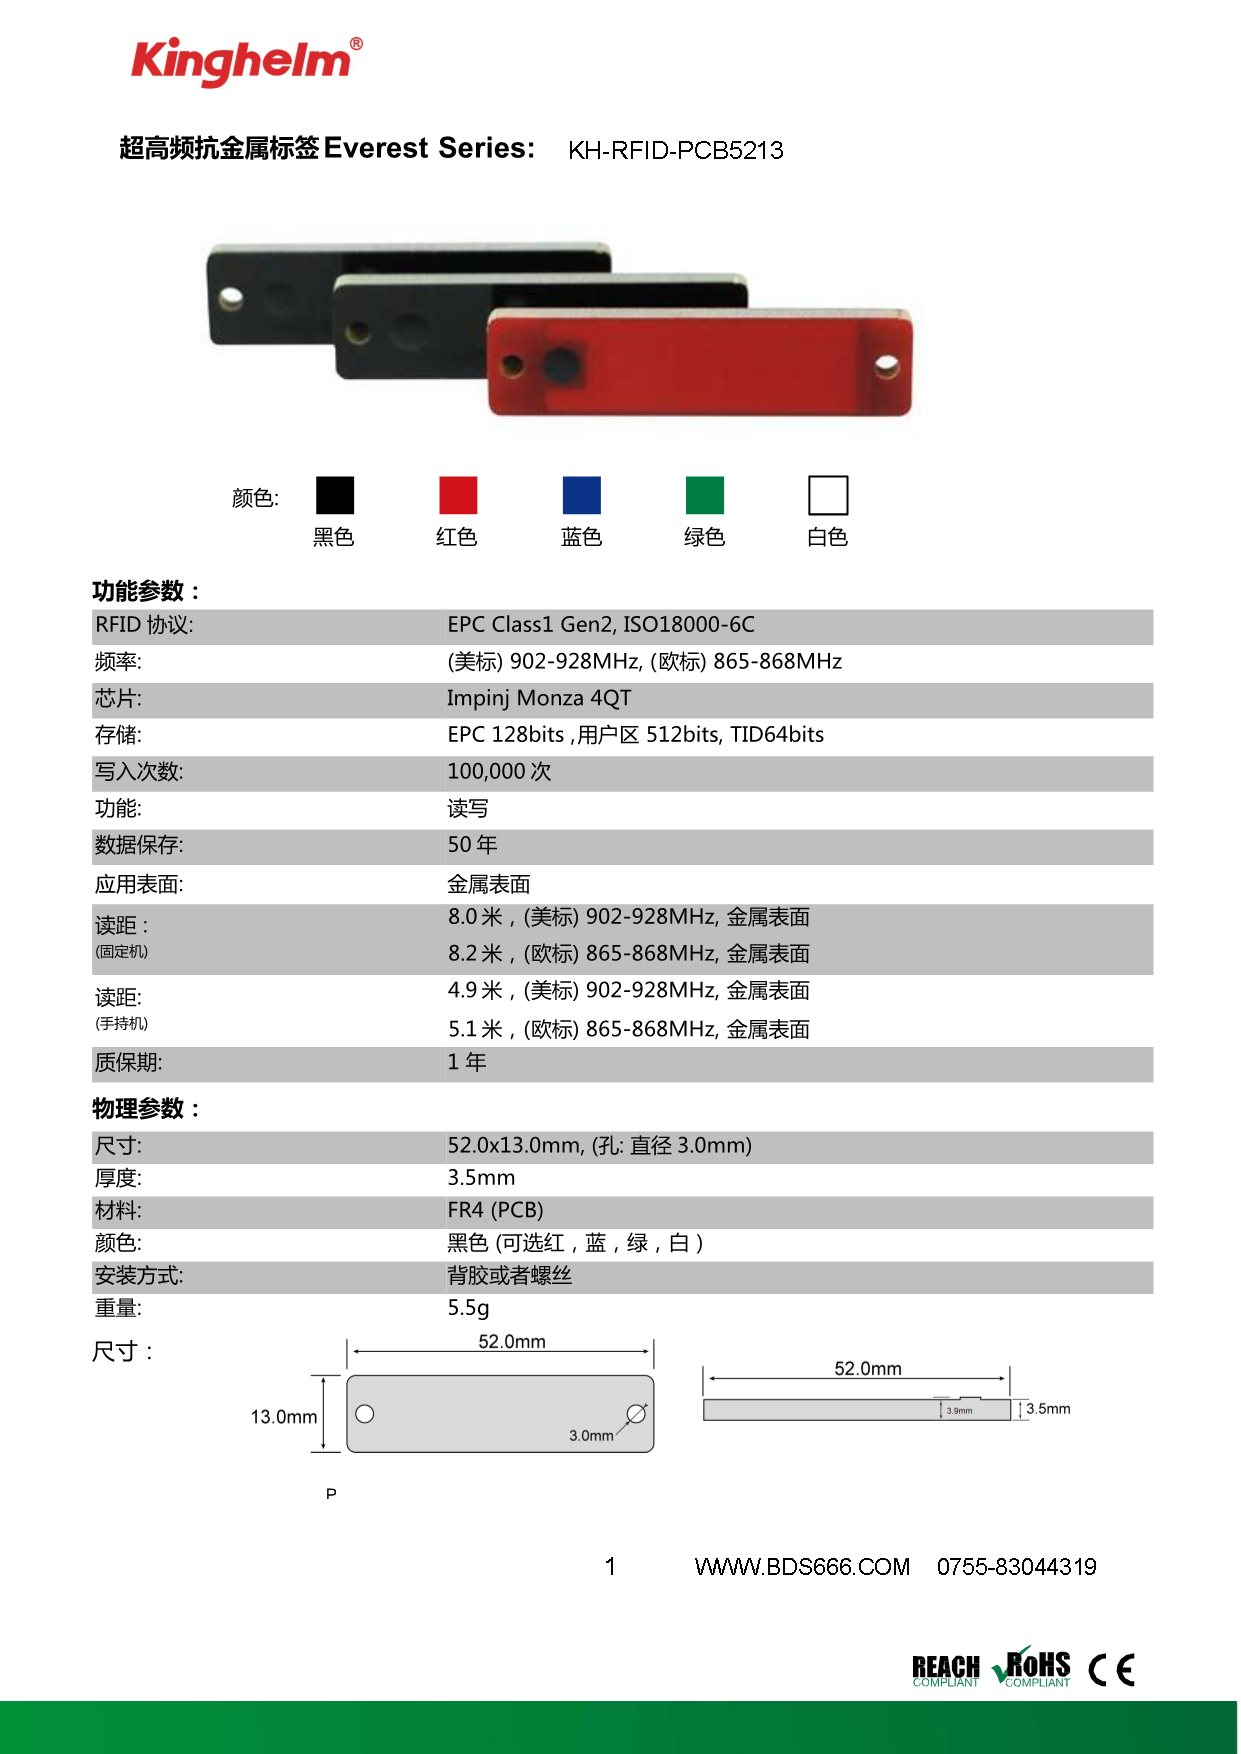 KH-RFID-PCB5213-1.jpg